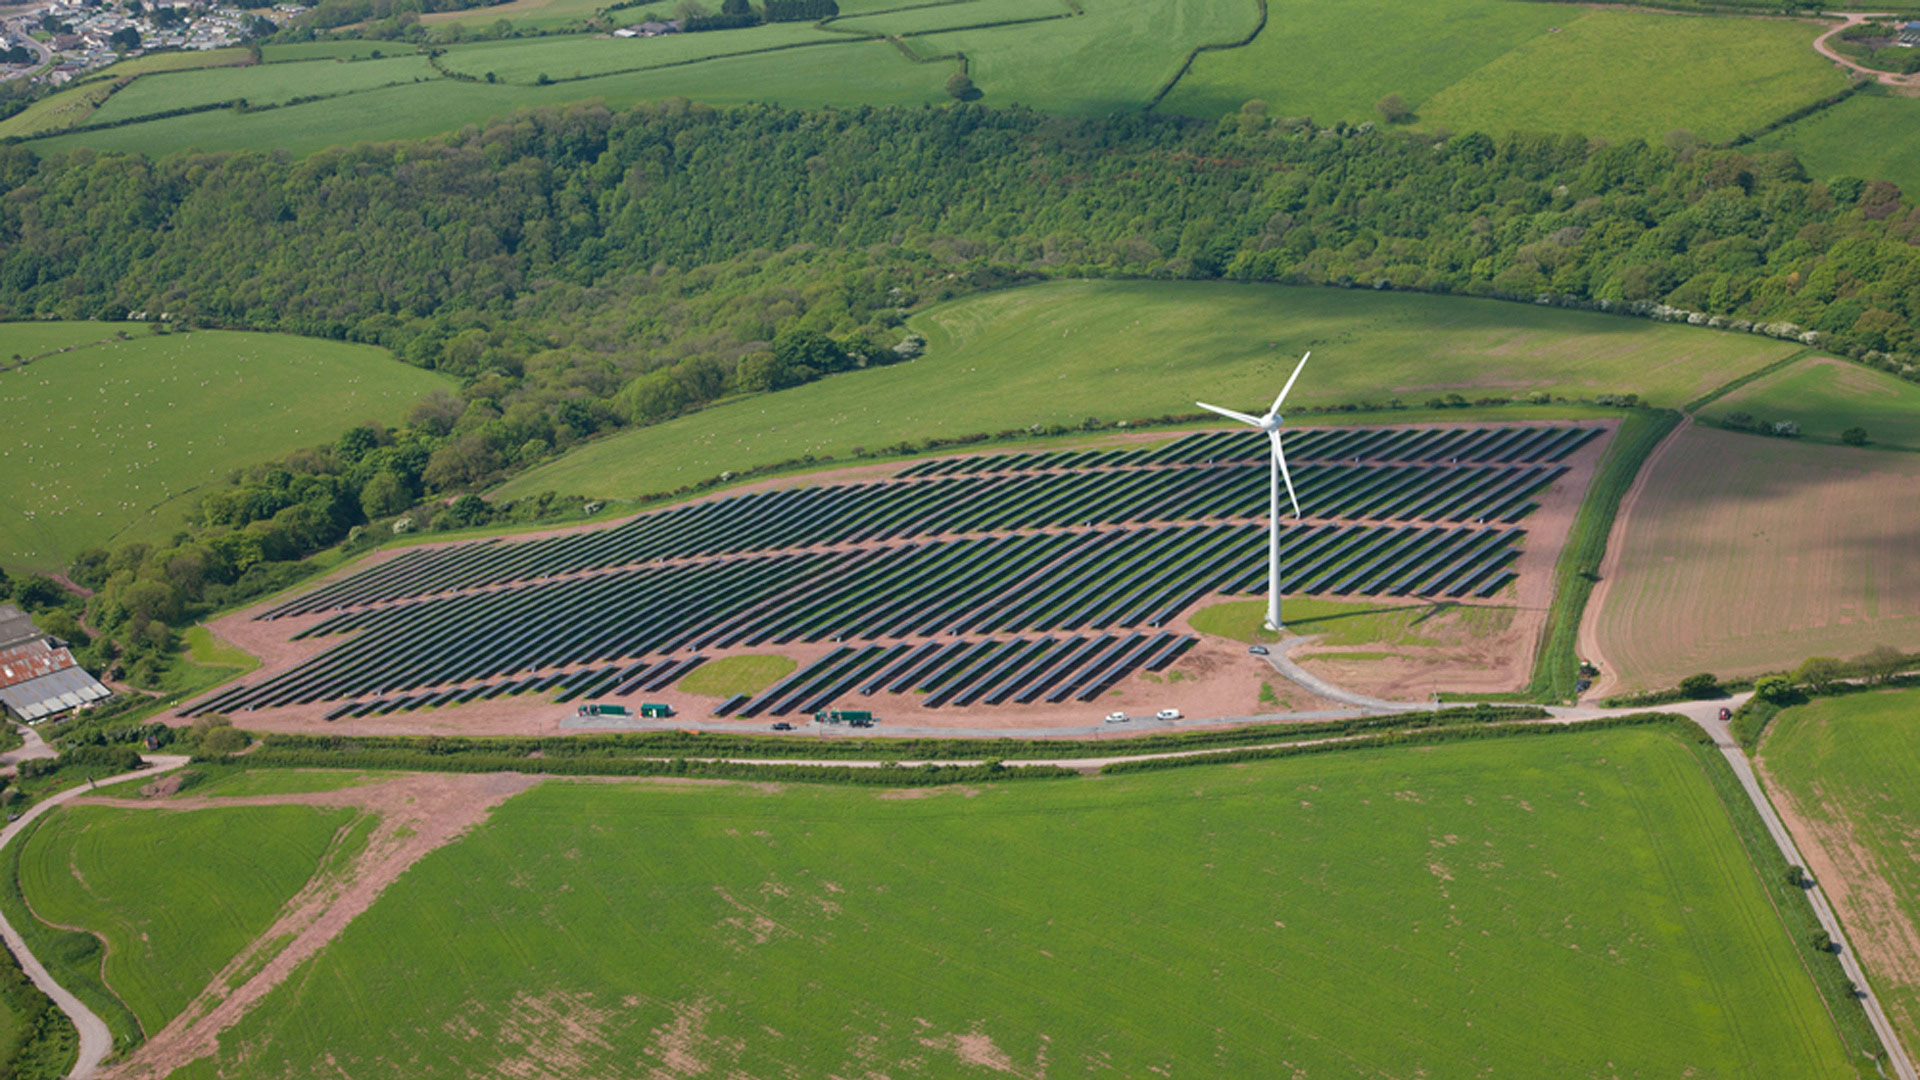 Parc Cynog wind and solar farm in Wales